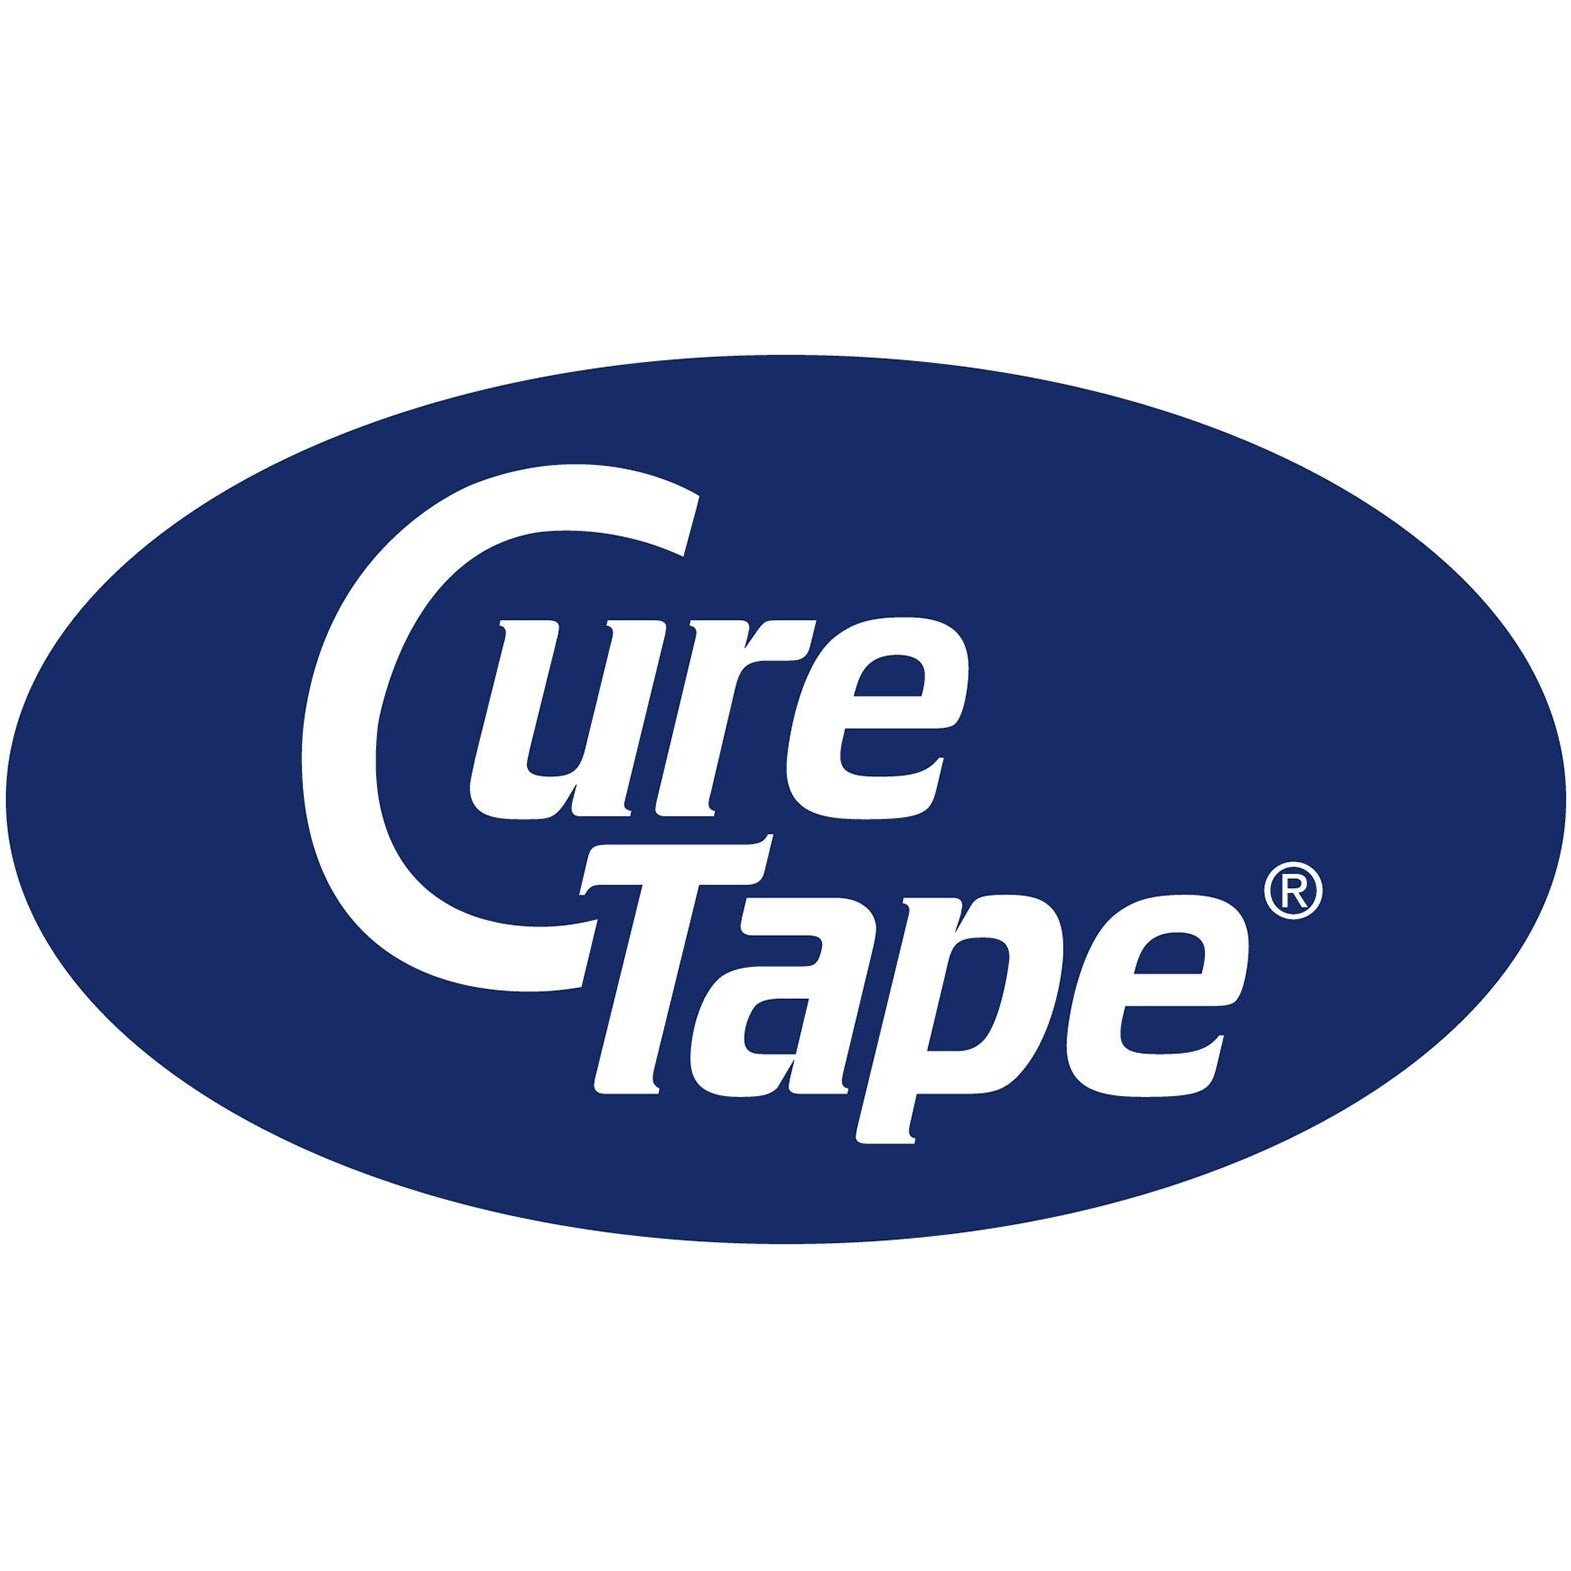 CureTape Rood